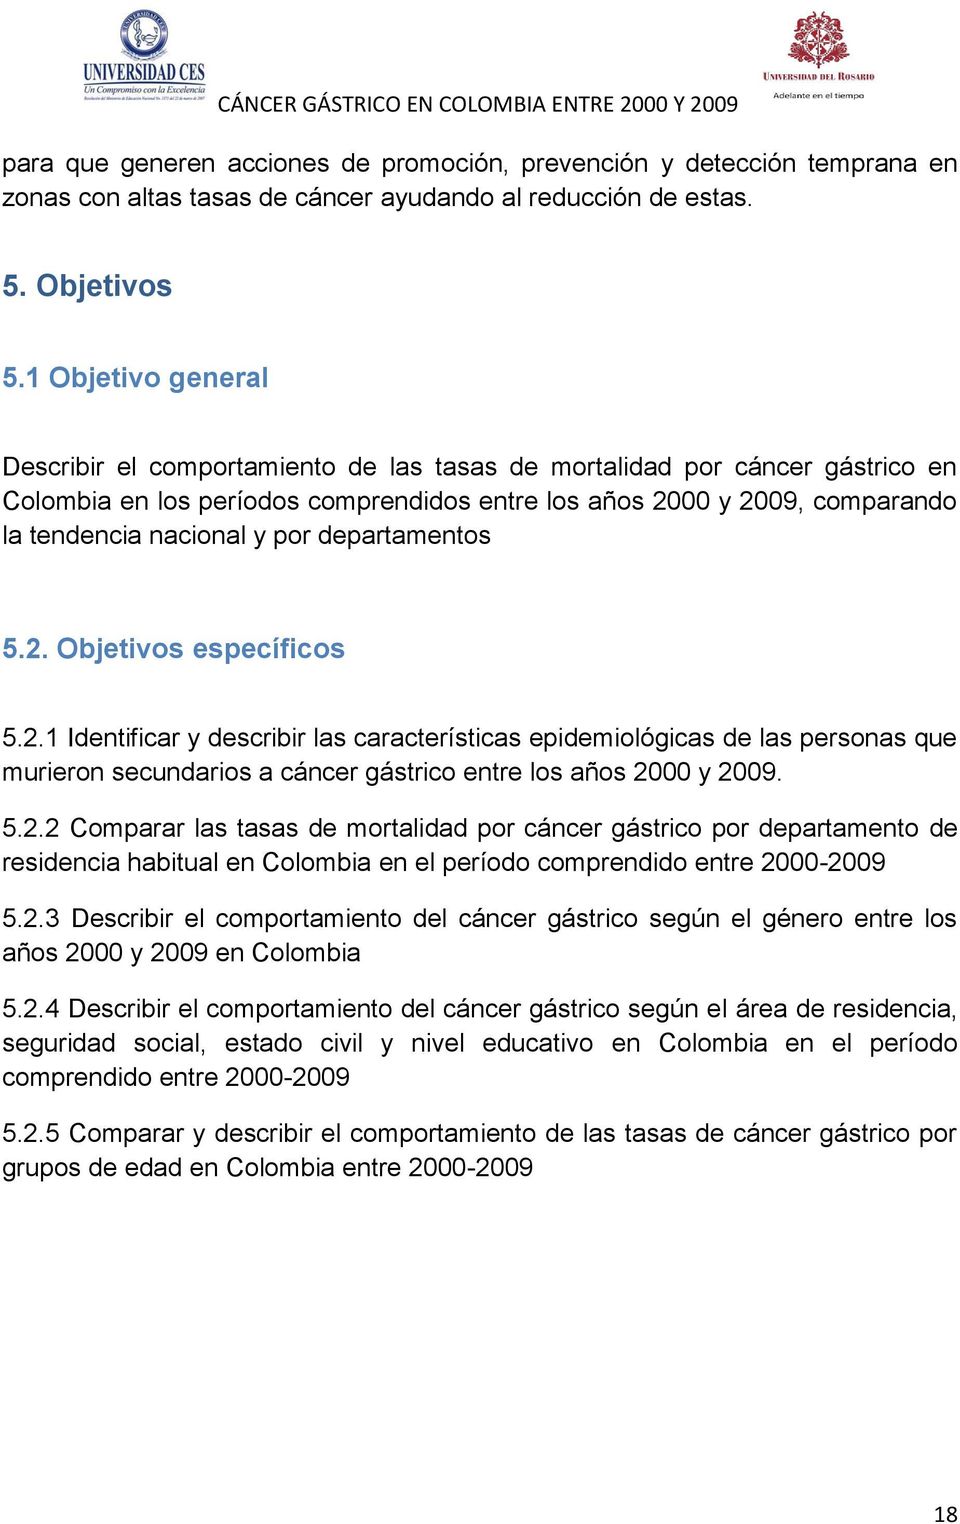 por departamentos 5.2. Objetivos específicos 5.2.1 Identificar y describir las características epidemiológicas de las personas que murieron secundarios a cáncer gástrico entre los años 2000 y 2009. 5.2.2 Comparar las tasas de mortalidad por cáncer gástrico por departamento de residencia habitual en Colombia en el período comprendido entre 2000-2009 5.